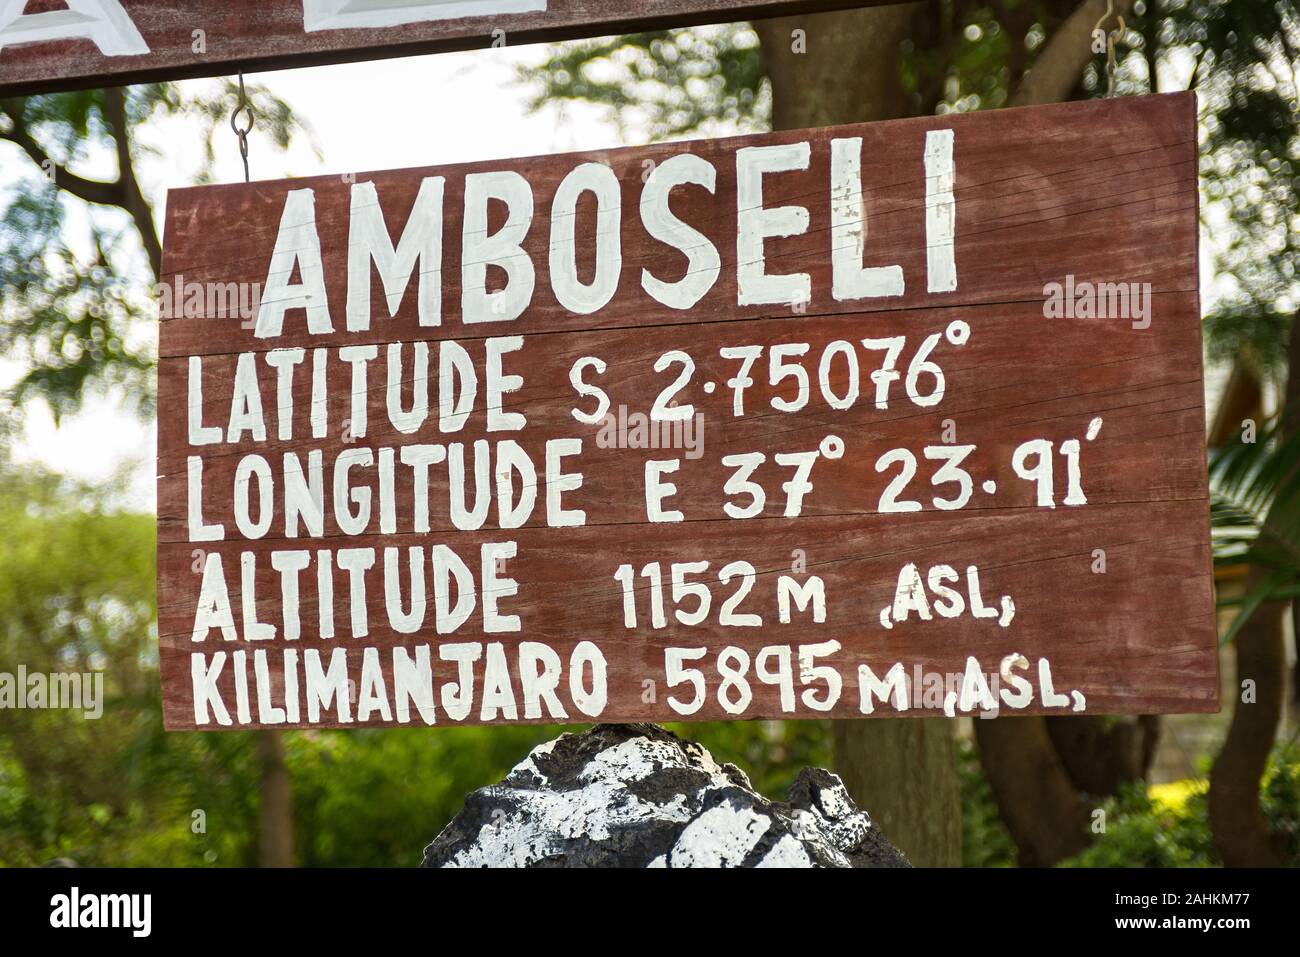 Cartello in legno con latitudine, longitudine e altitudine dettagli di Amboseli e del Monte Kilimanjaro, Kenya, Africa orientale Foto Stock